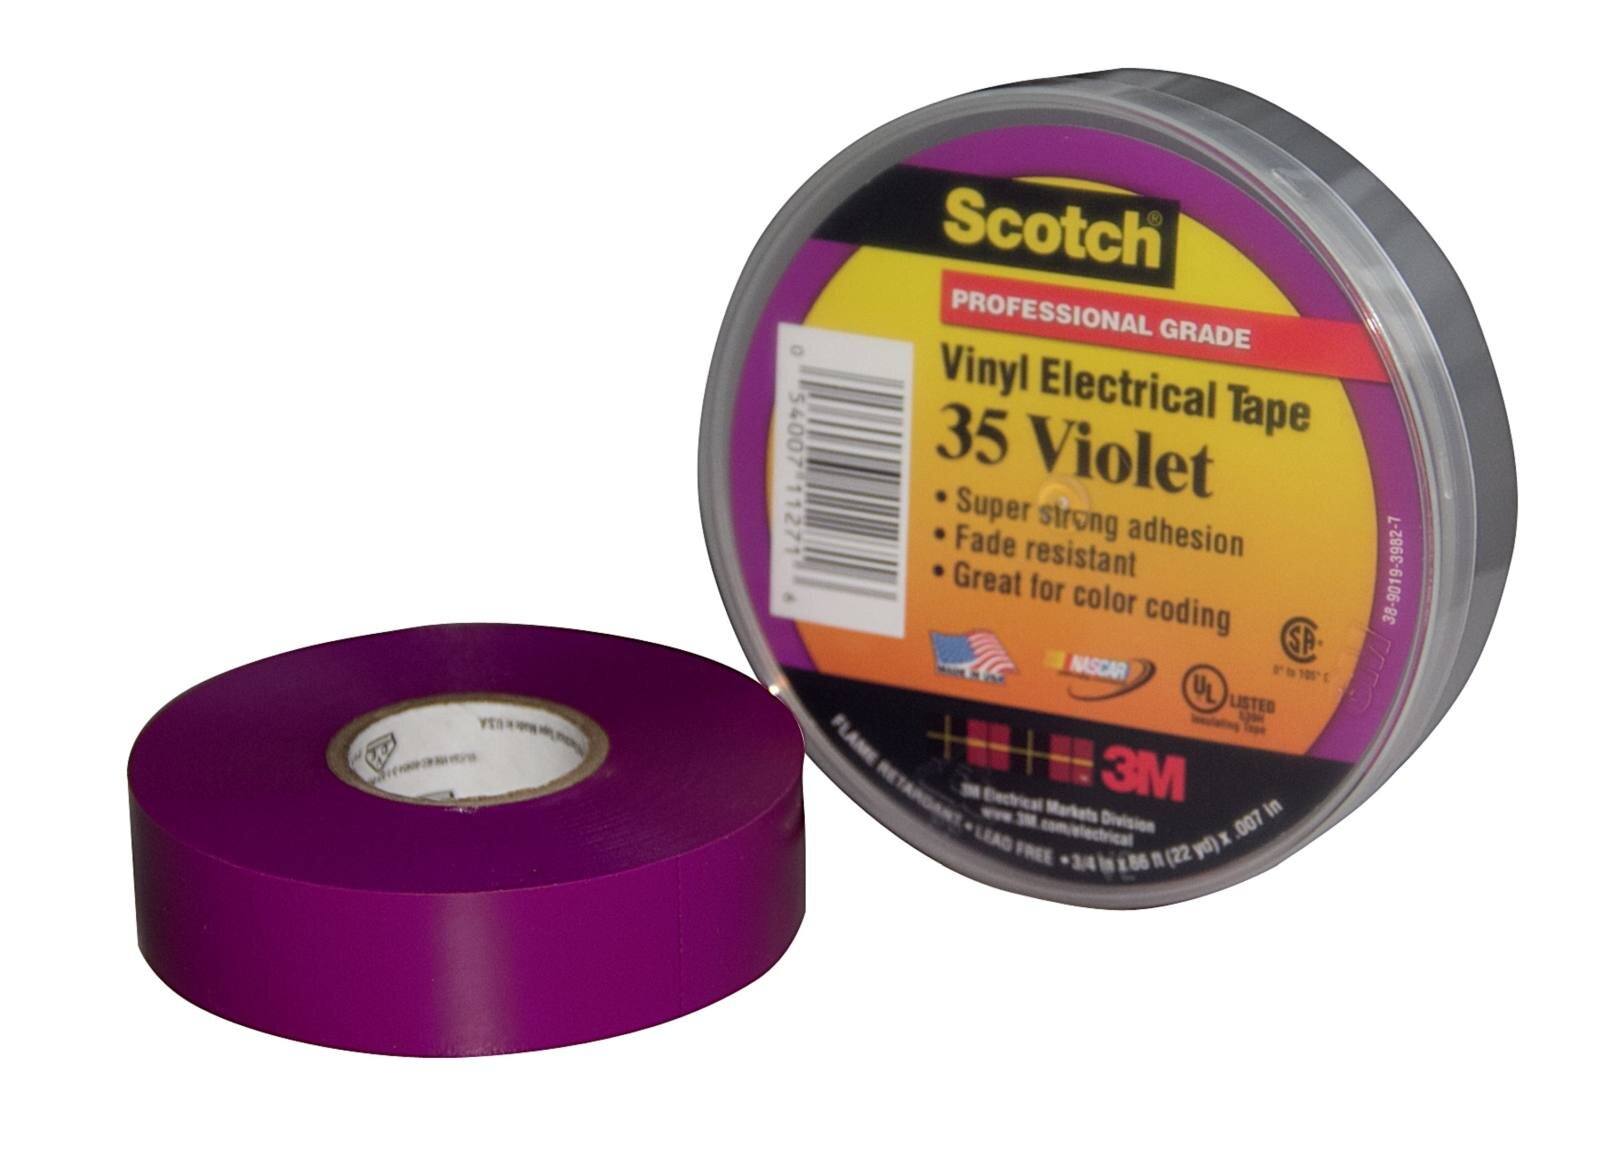 3M Scotch 35 Nastro isolante elettrico in vinile, viola, 19 mm x 20 m, 0,18 mm